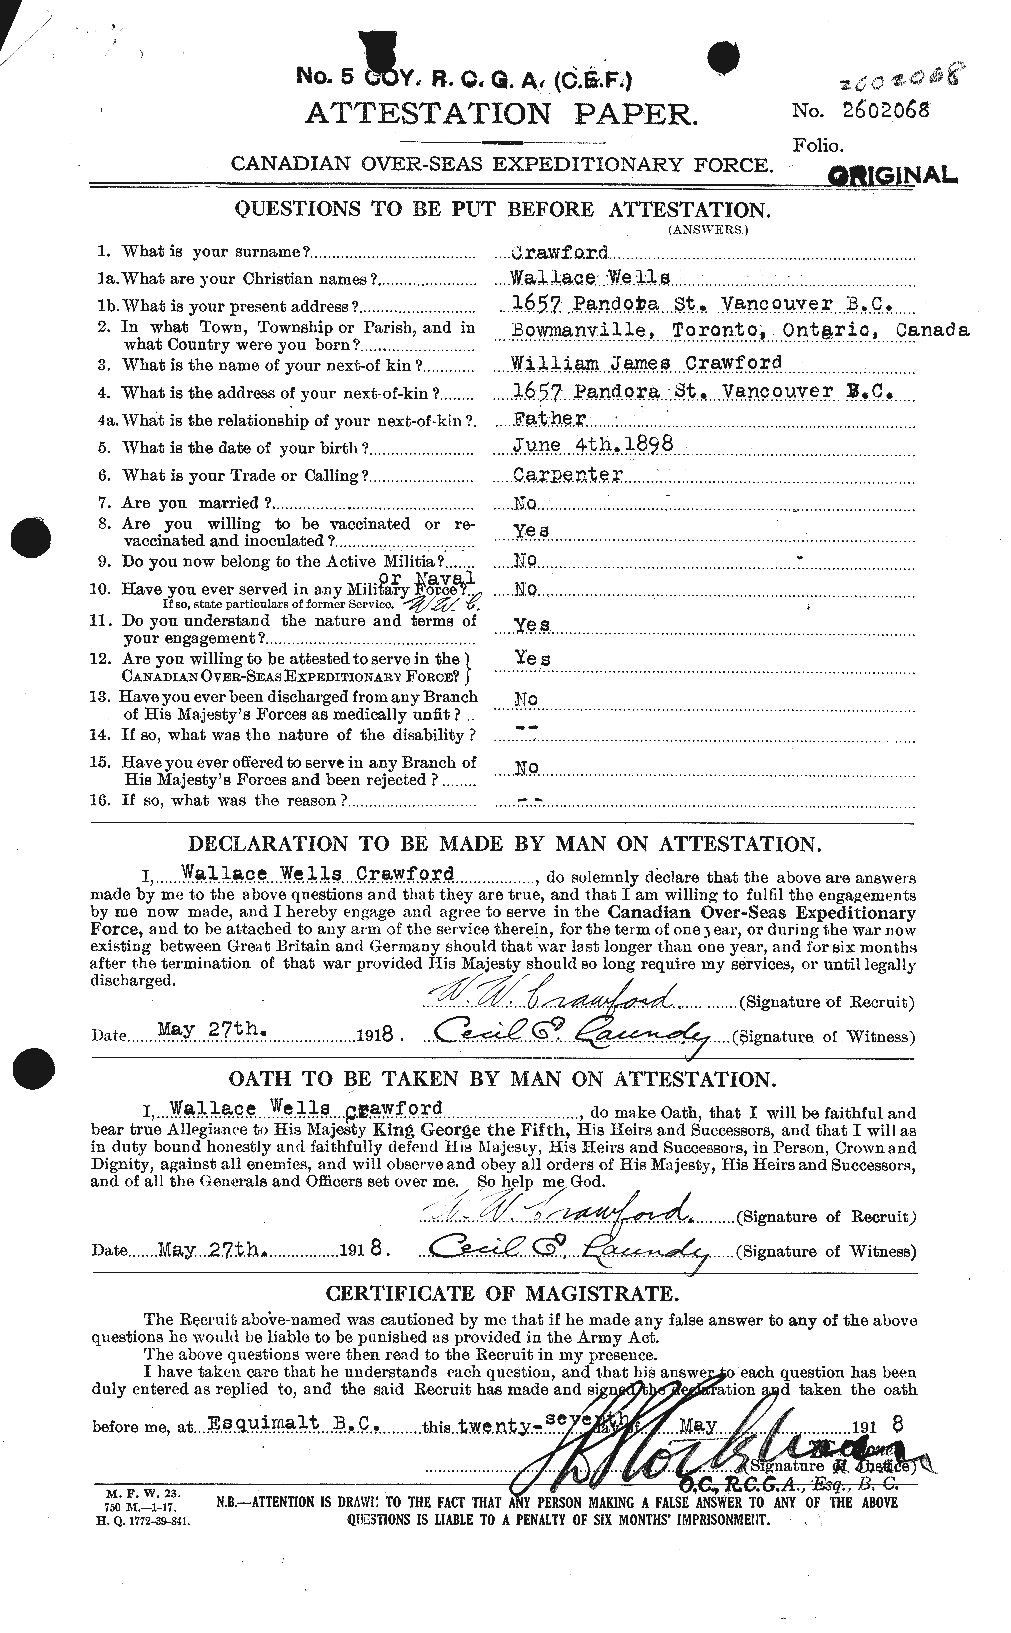 Dossiers du Personnel de la Première Guerre mondiale - CEC 061179a